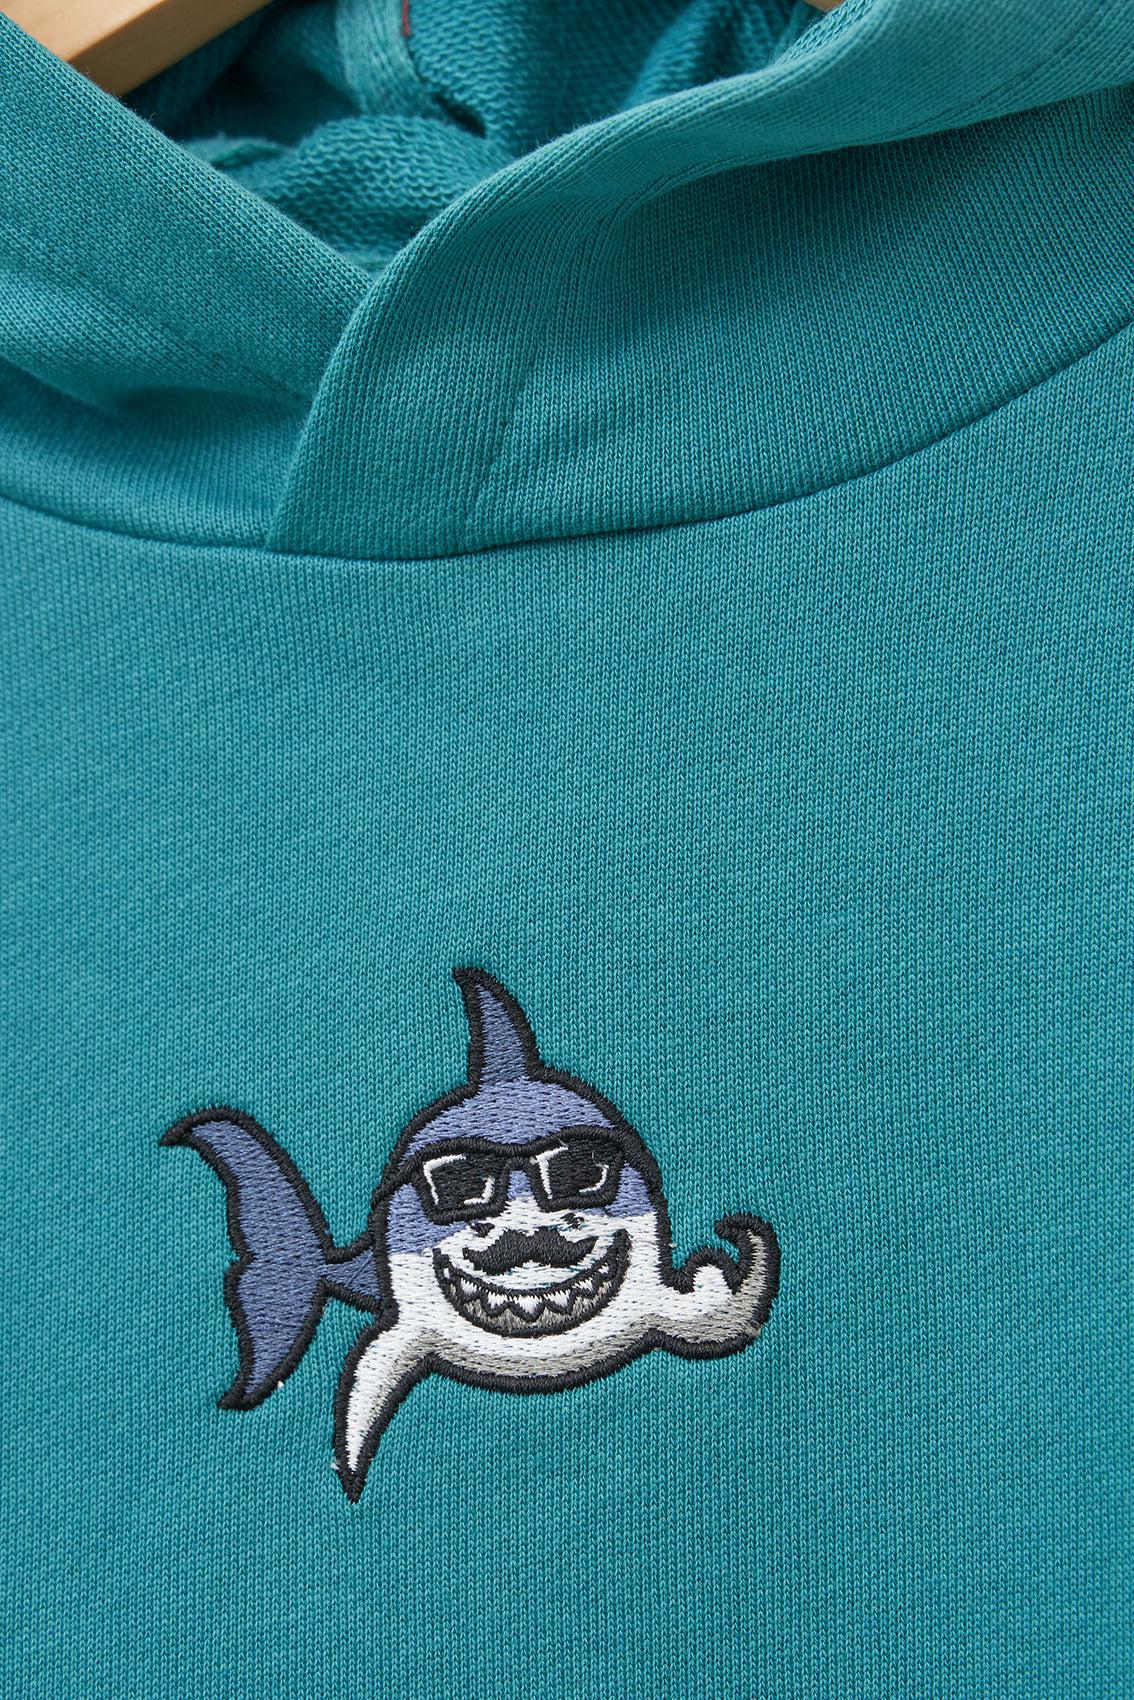 Batela Embroidered Shark Hooded Sweatshirt Teal